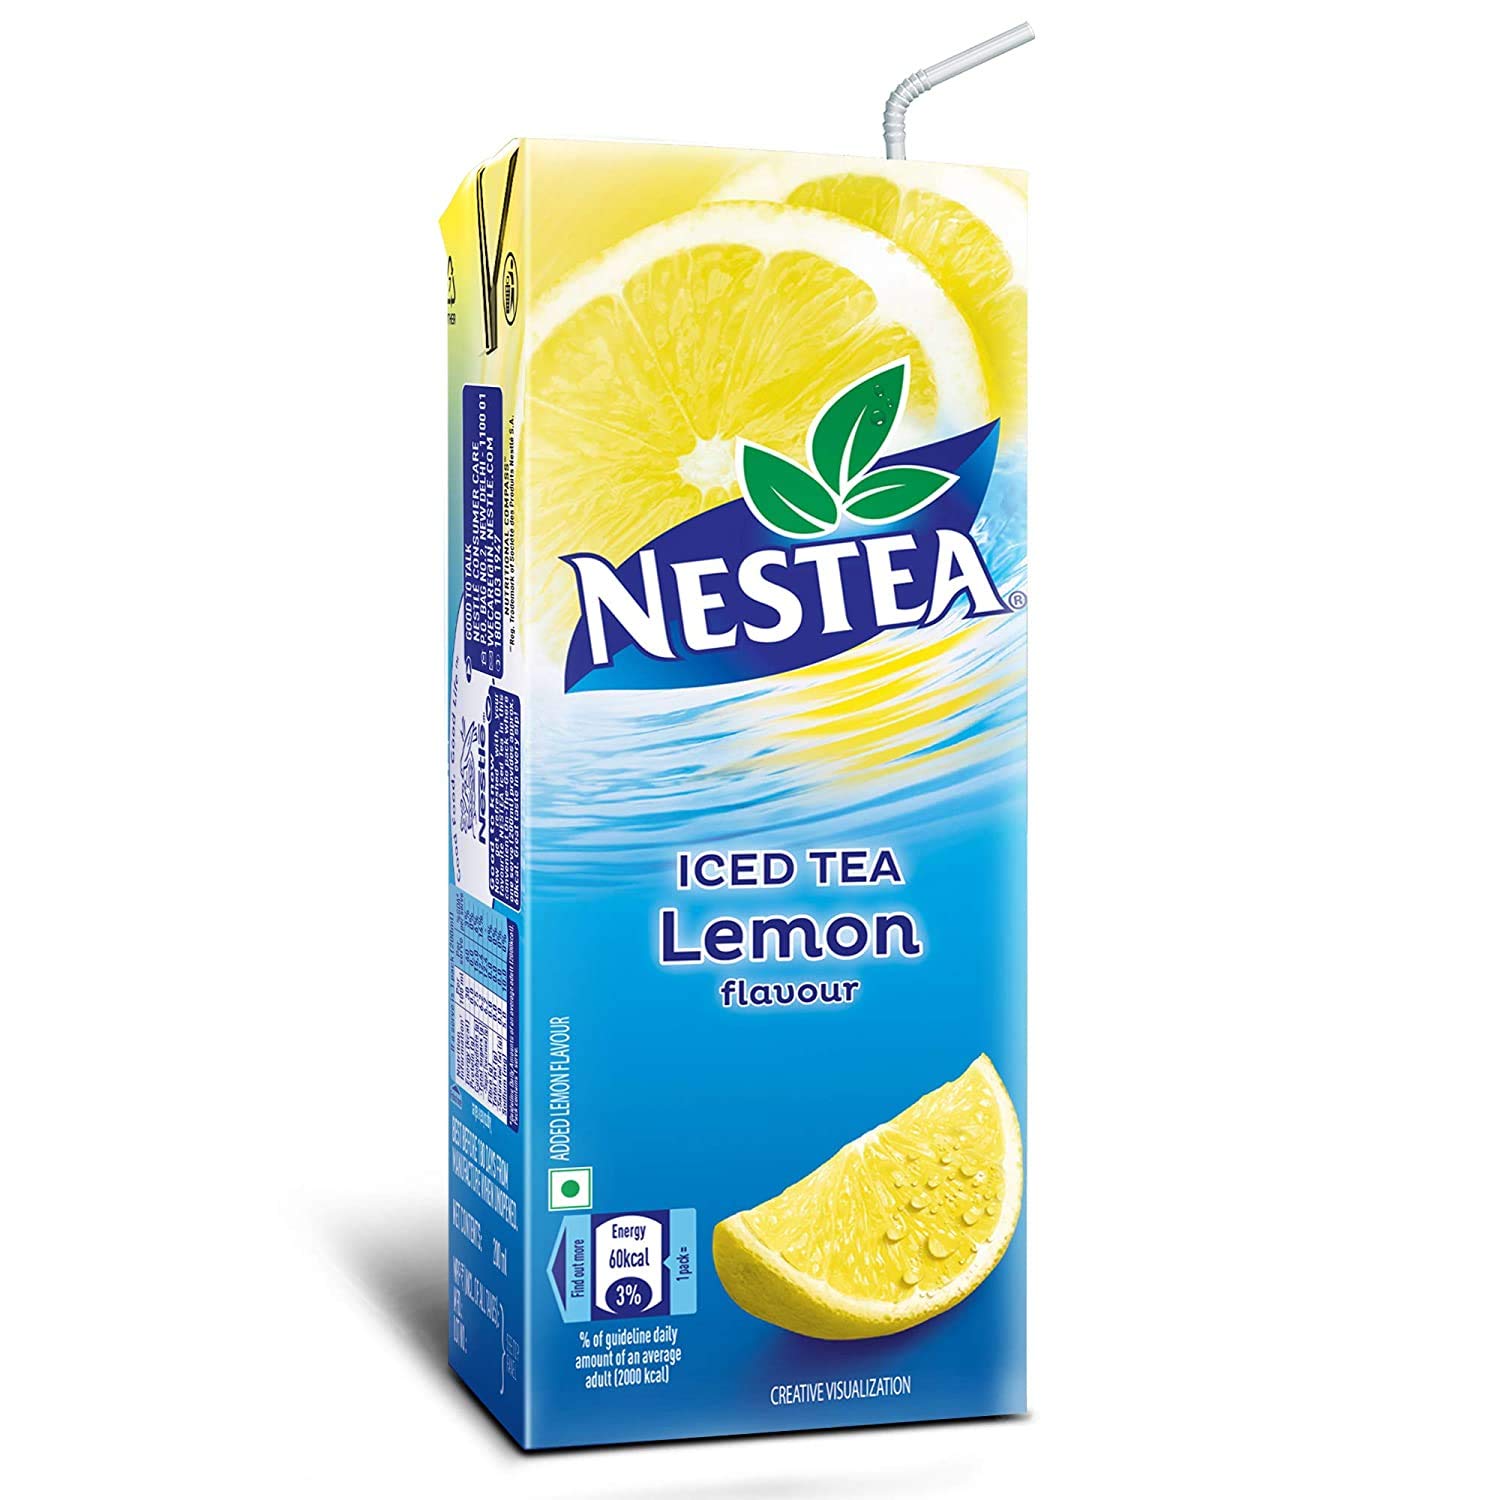 Nestea Ready to drink lemon flavour Iced Tea